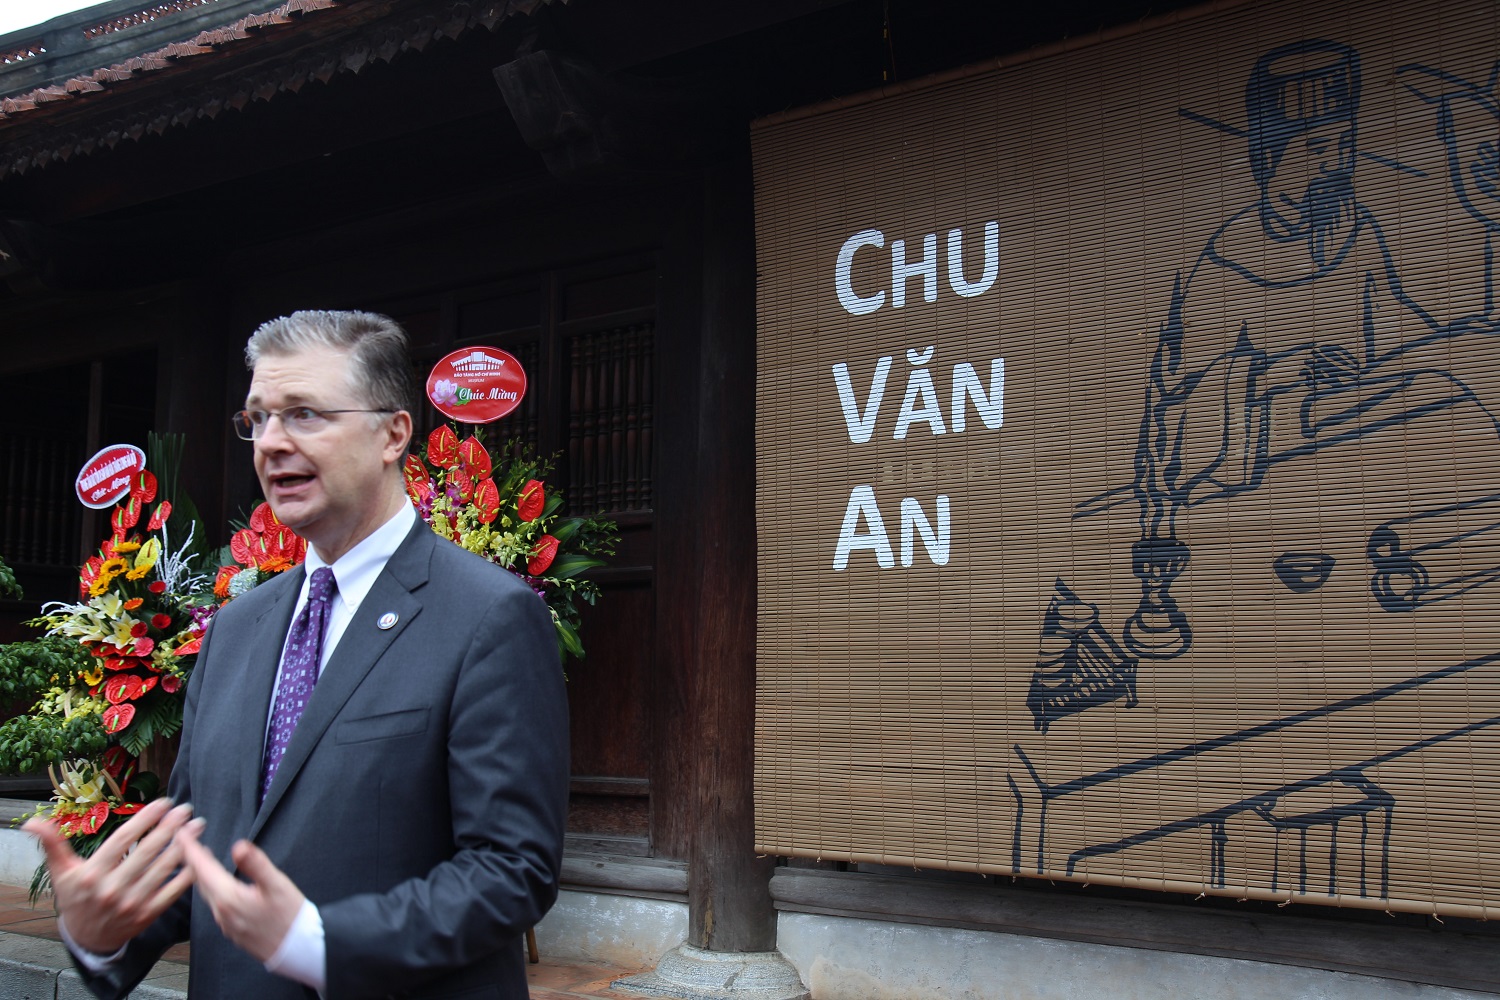 Đại sứ Mỹ bày tỏ sự ngưỡng mộ với truyền thống hiếu học lâu đời của người Việt